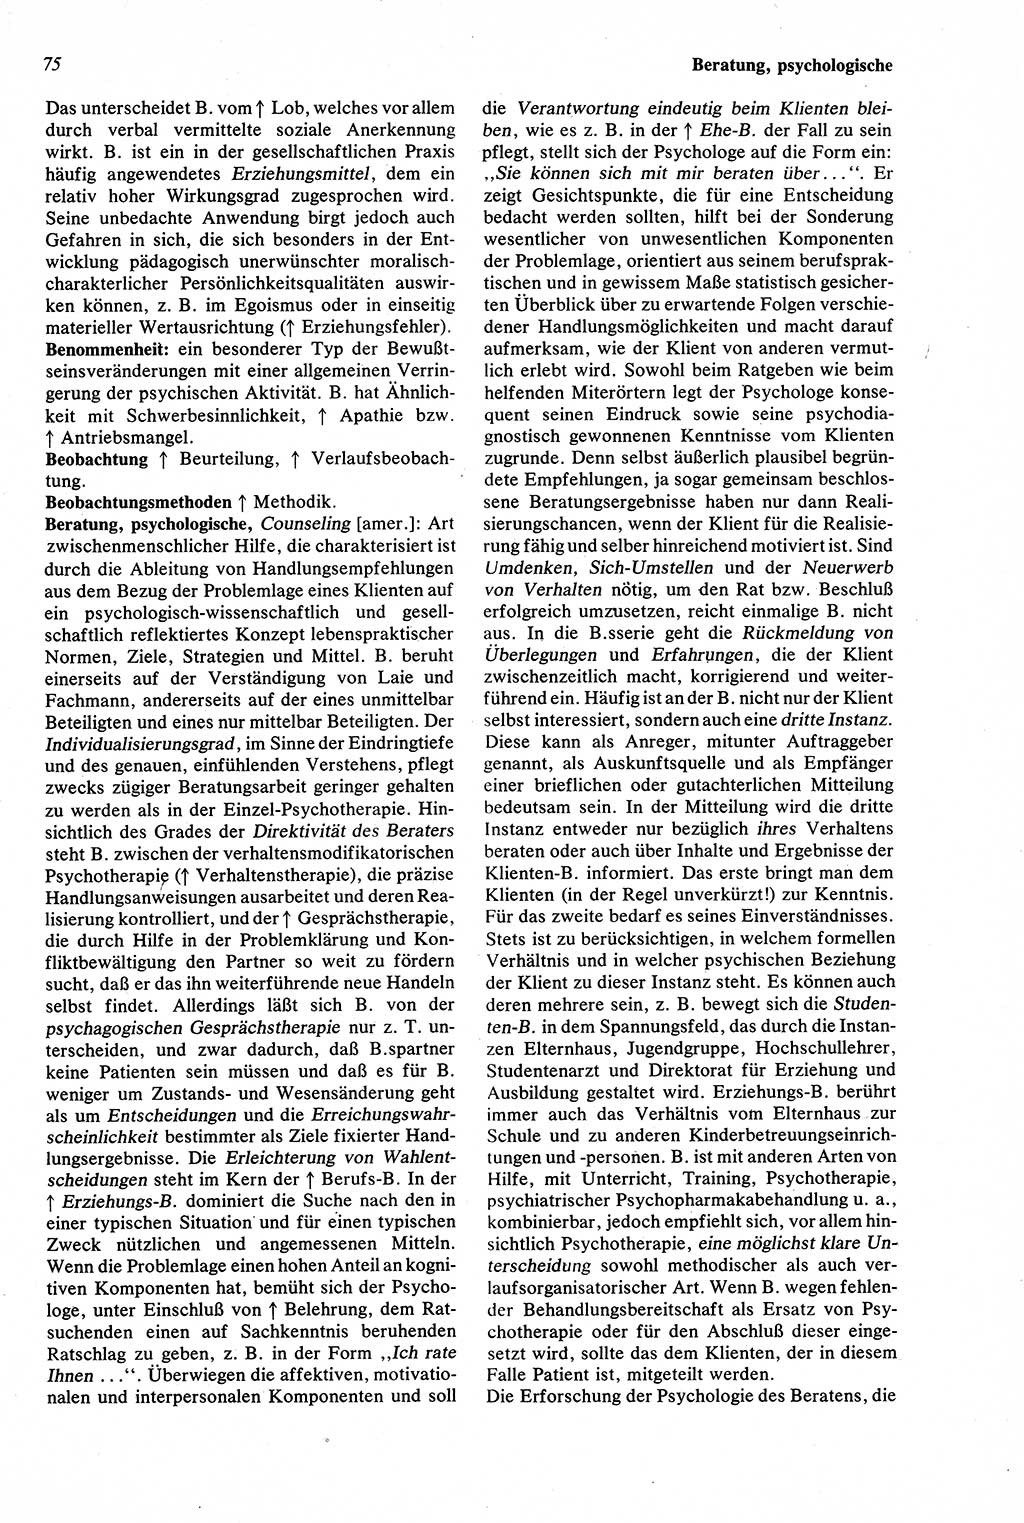 Wörterbuch der Psychologie [Deutsche Demokratische Republik (DDR)] 1976, Seite 75 (Wb. Psych. DDR 1976, S. 75)